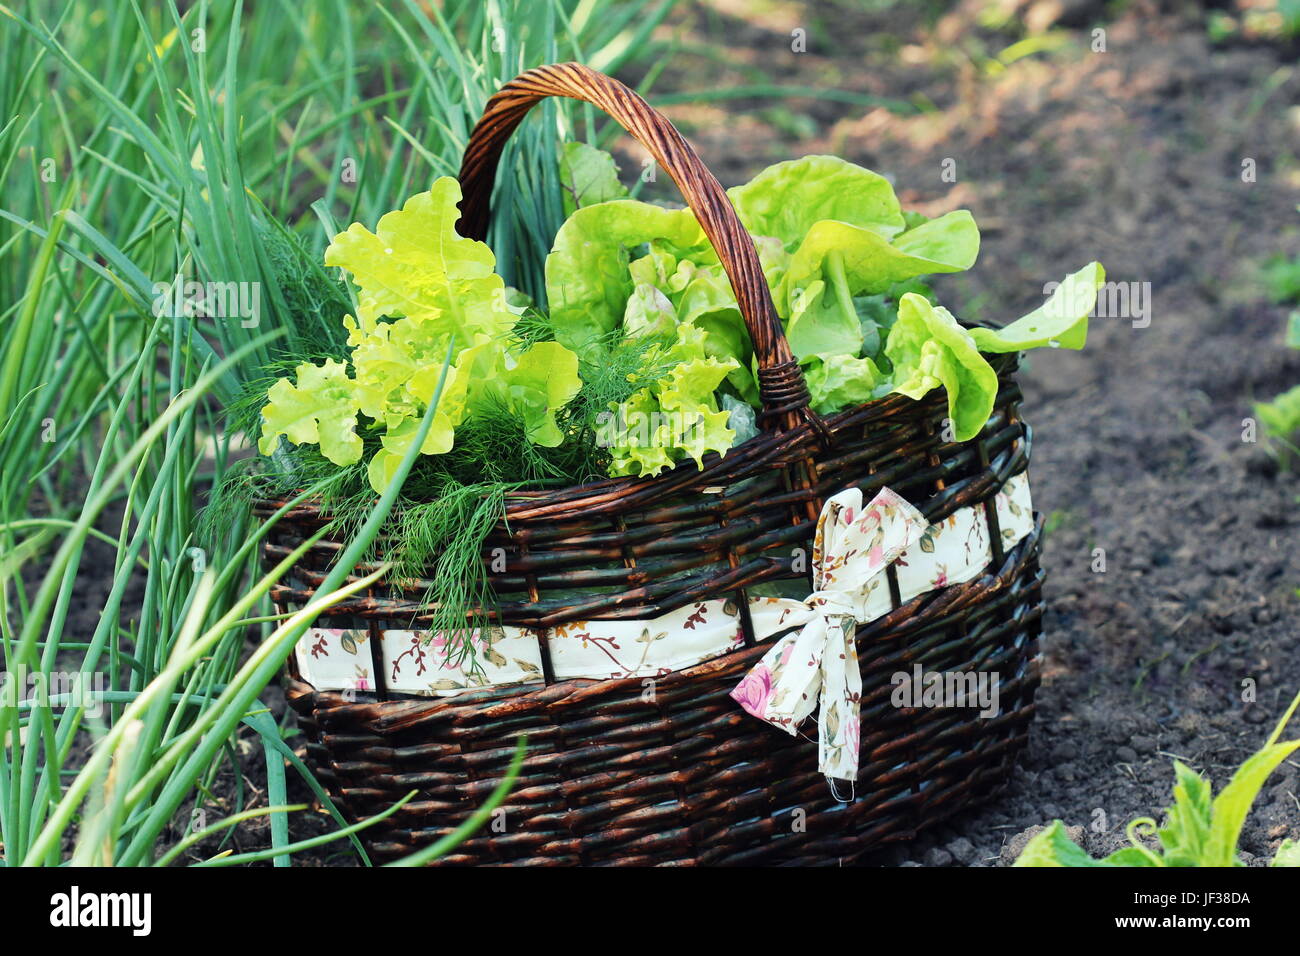 Lechuga en una cesta colocada cerca de una parcela de hortalizas Foto de stock